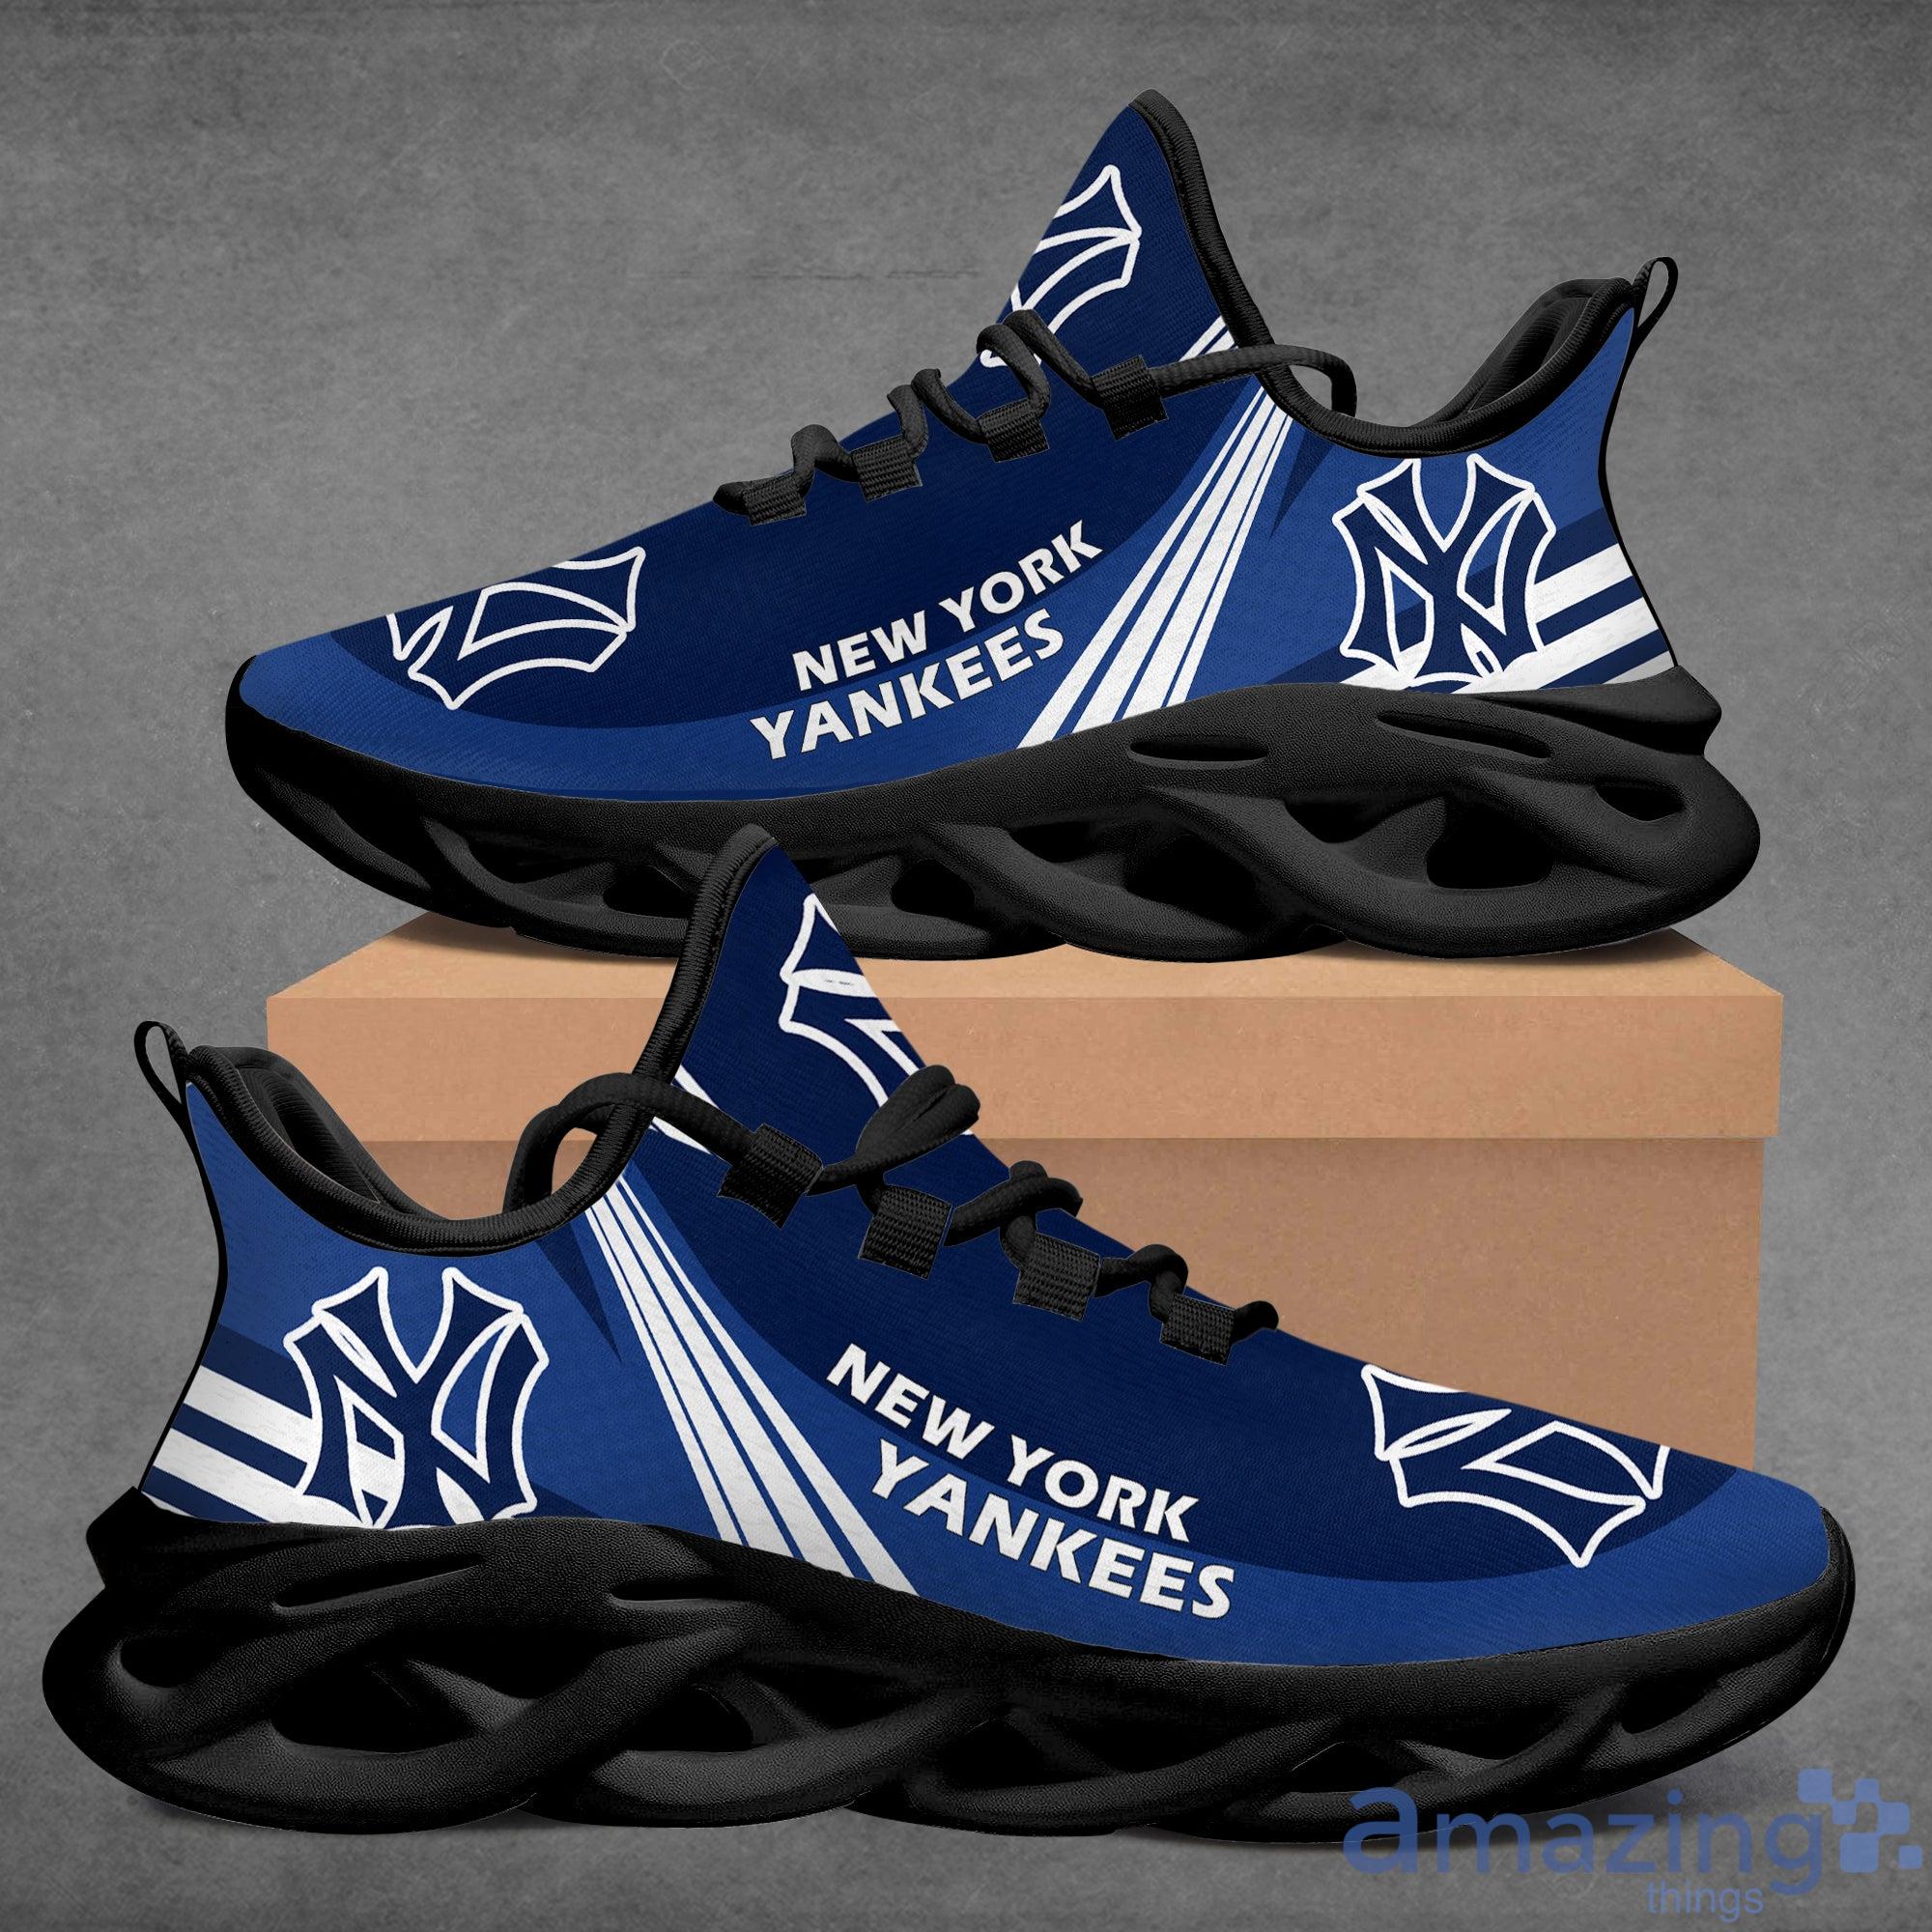 Mlb New York Yankees Air Jordan 4 Sneakers Shoes For Men And Women